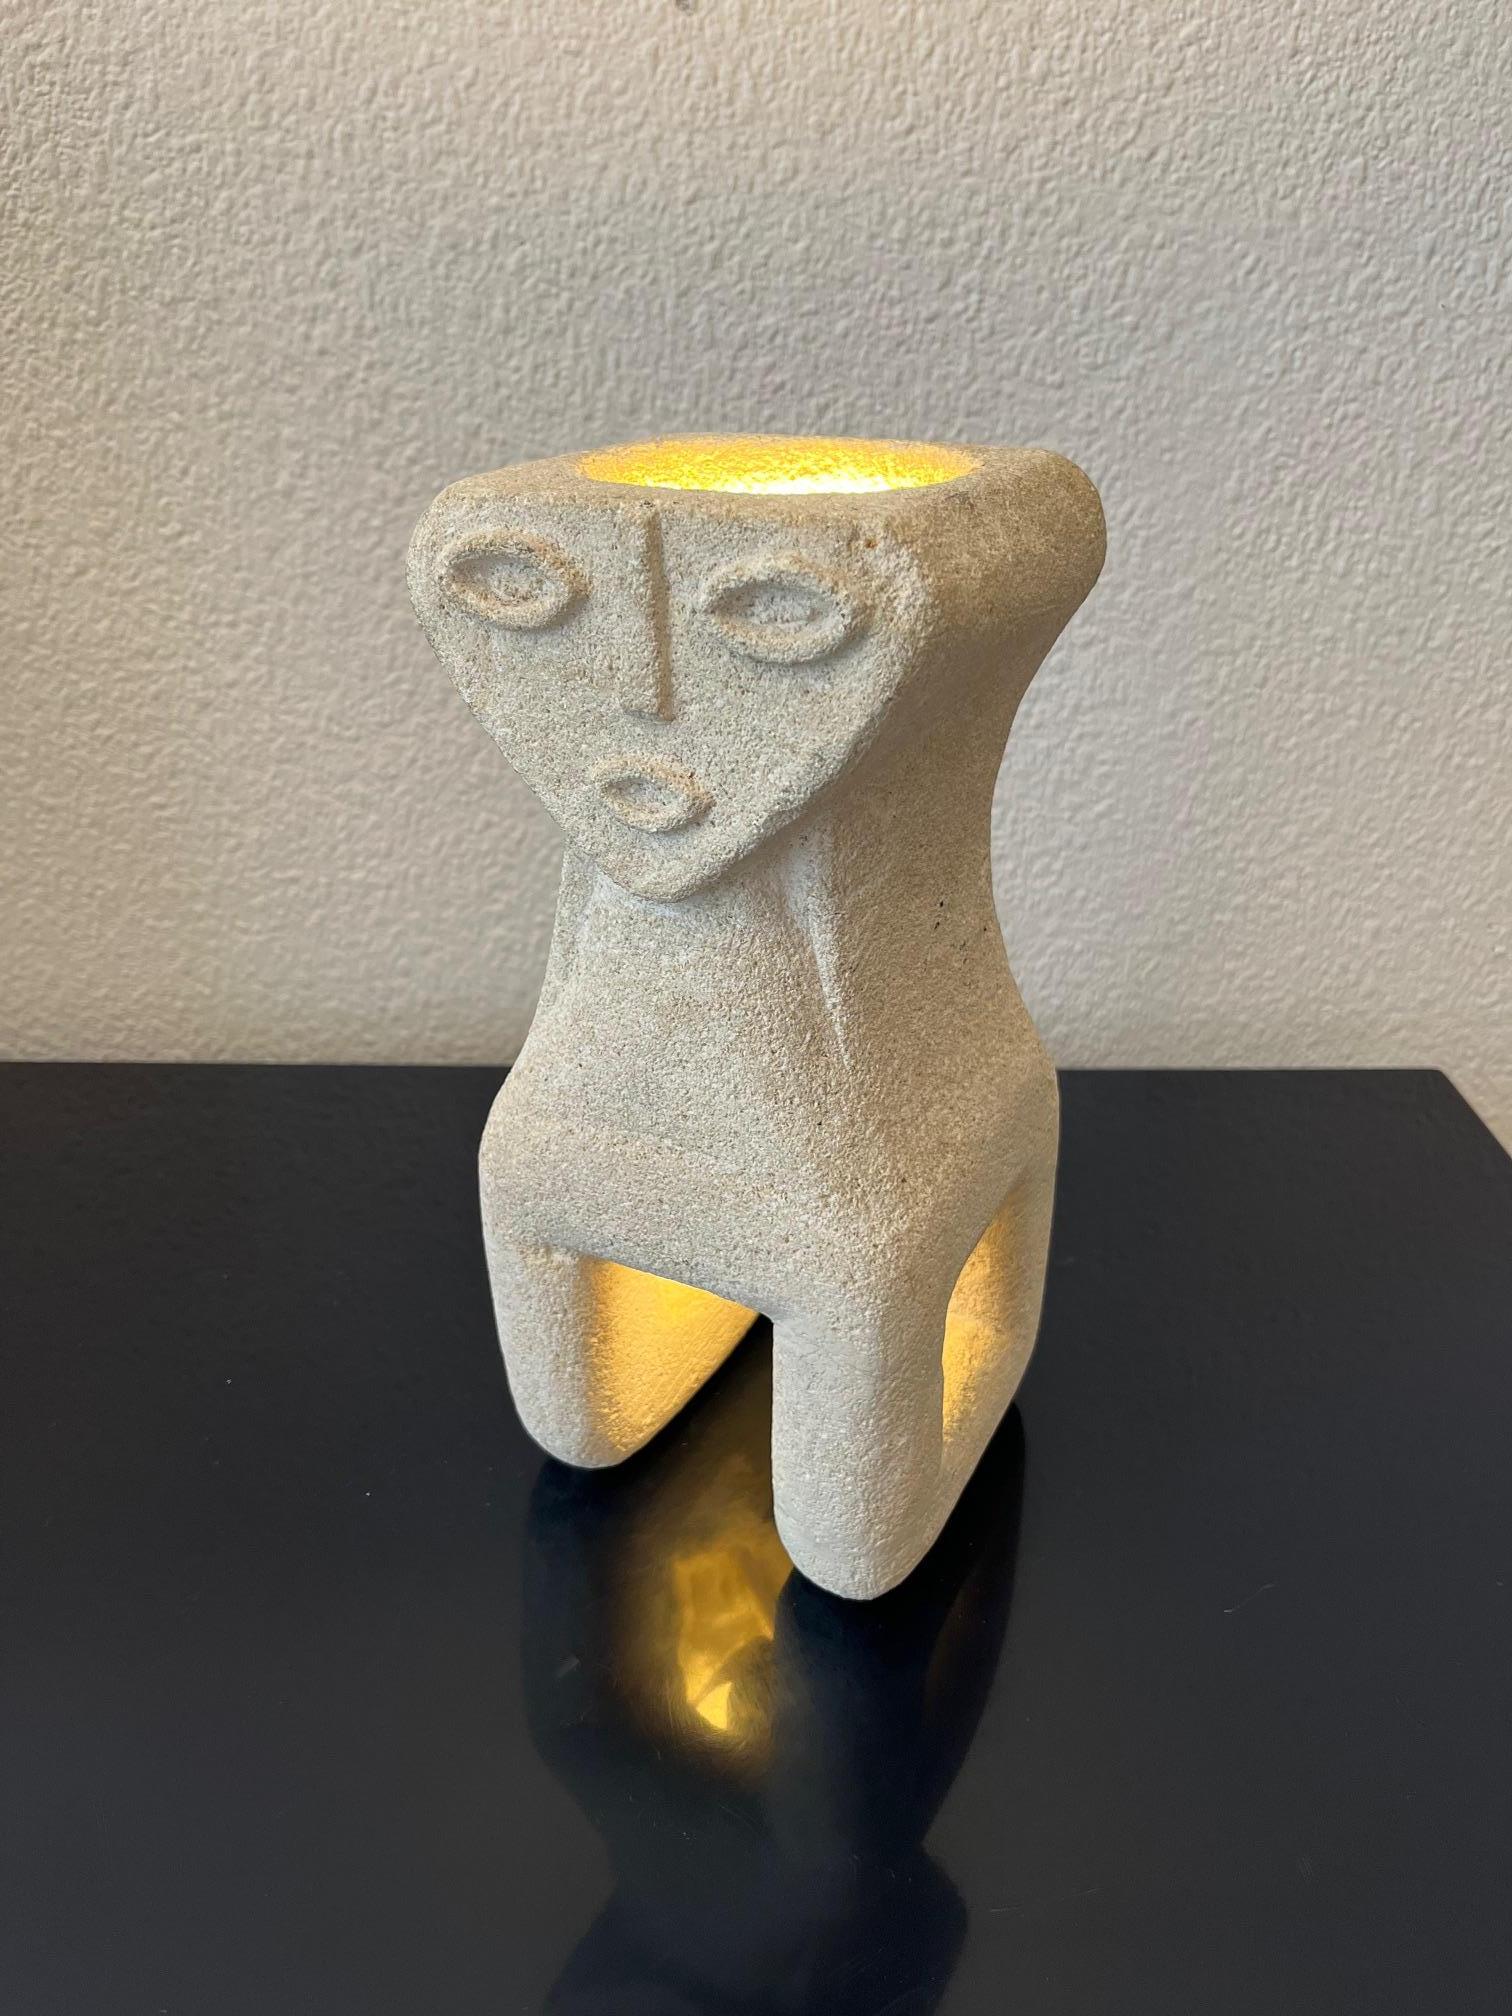 Handgeschnitzte Tischlampe aus Kalkstein mit mystischem dreieckigem Gesicht von Albert Tormos, Frankreich ca. 1970s
Guter Zustand. An 2 Stellen restauriert, am Boden, siehe Bilder.
Signiert auf der Seite ( Bilder )

